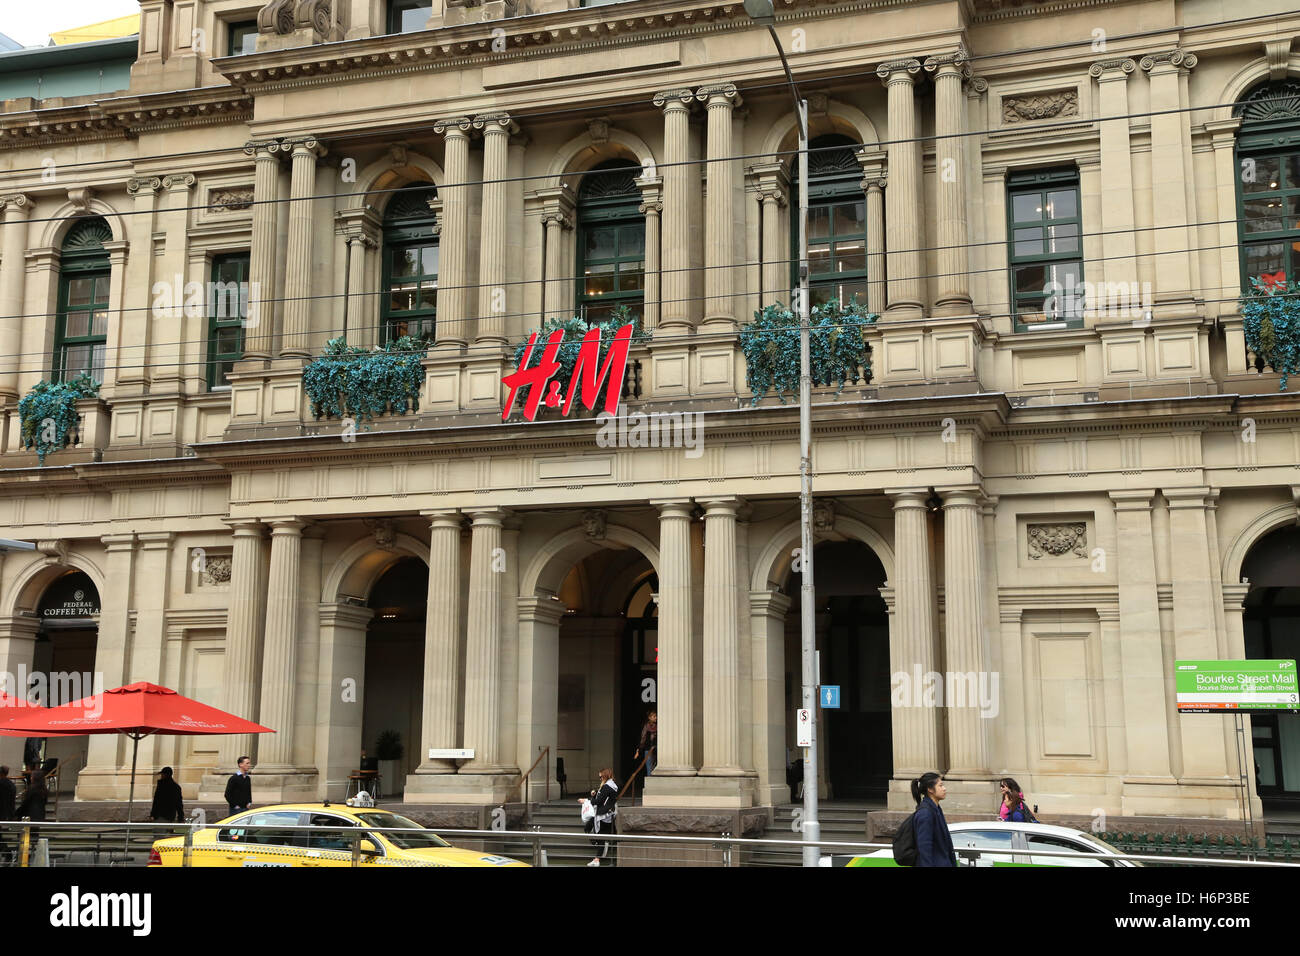 The H&M store in Melbourne, Victoria, Australia Stock Photo - Alamy